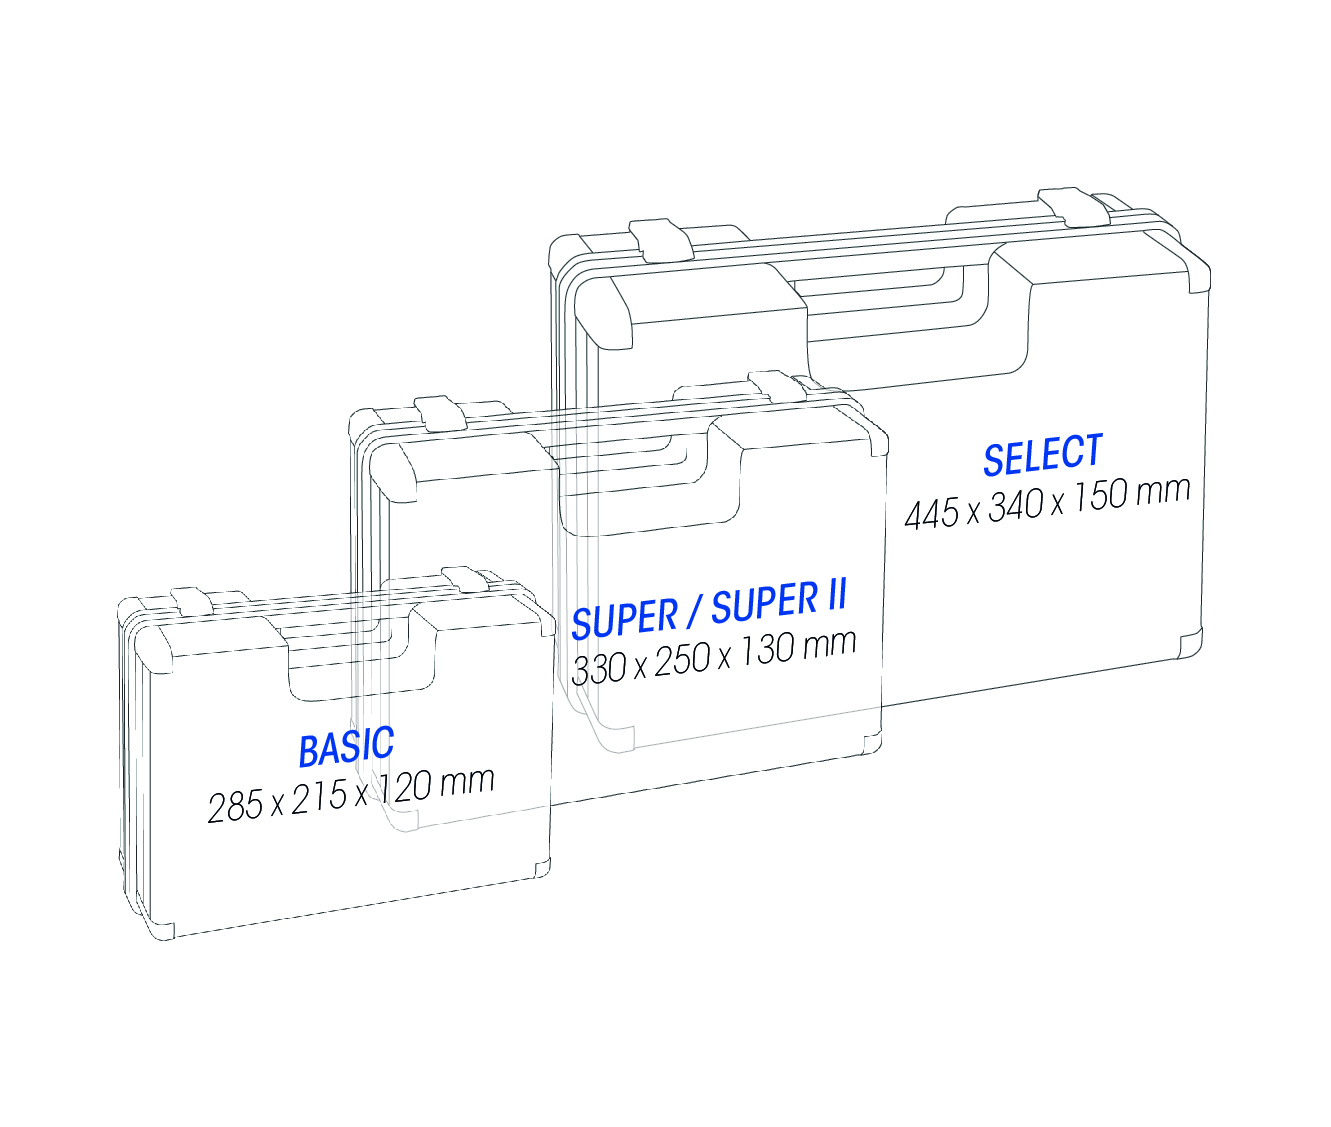 First Aid Kit ultraBOX SUPER II